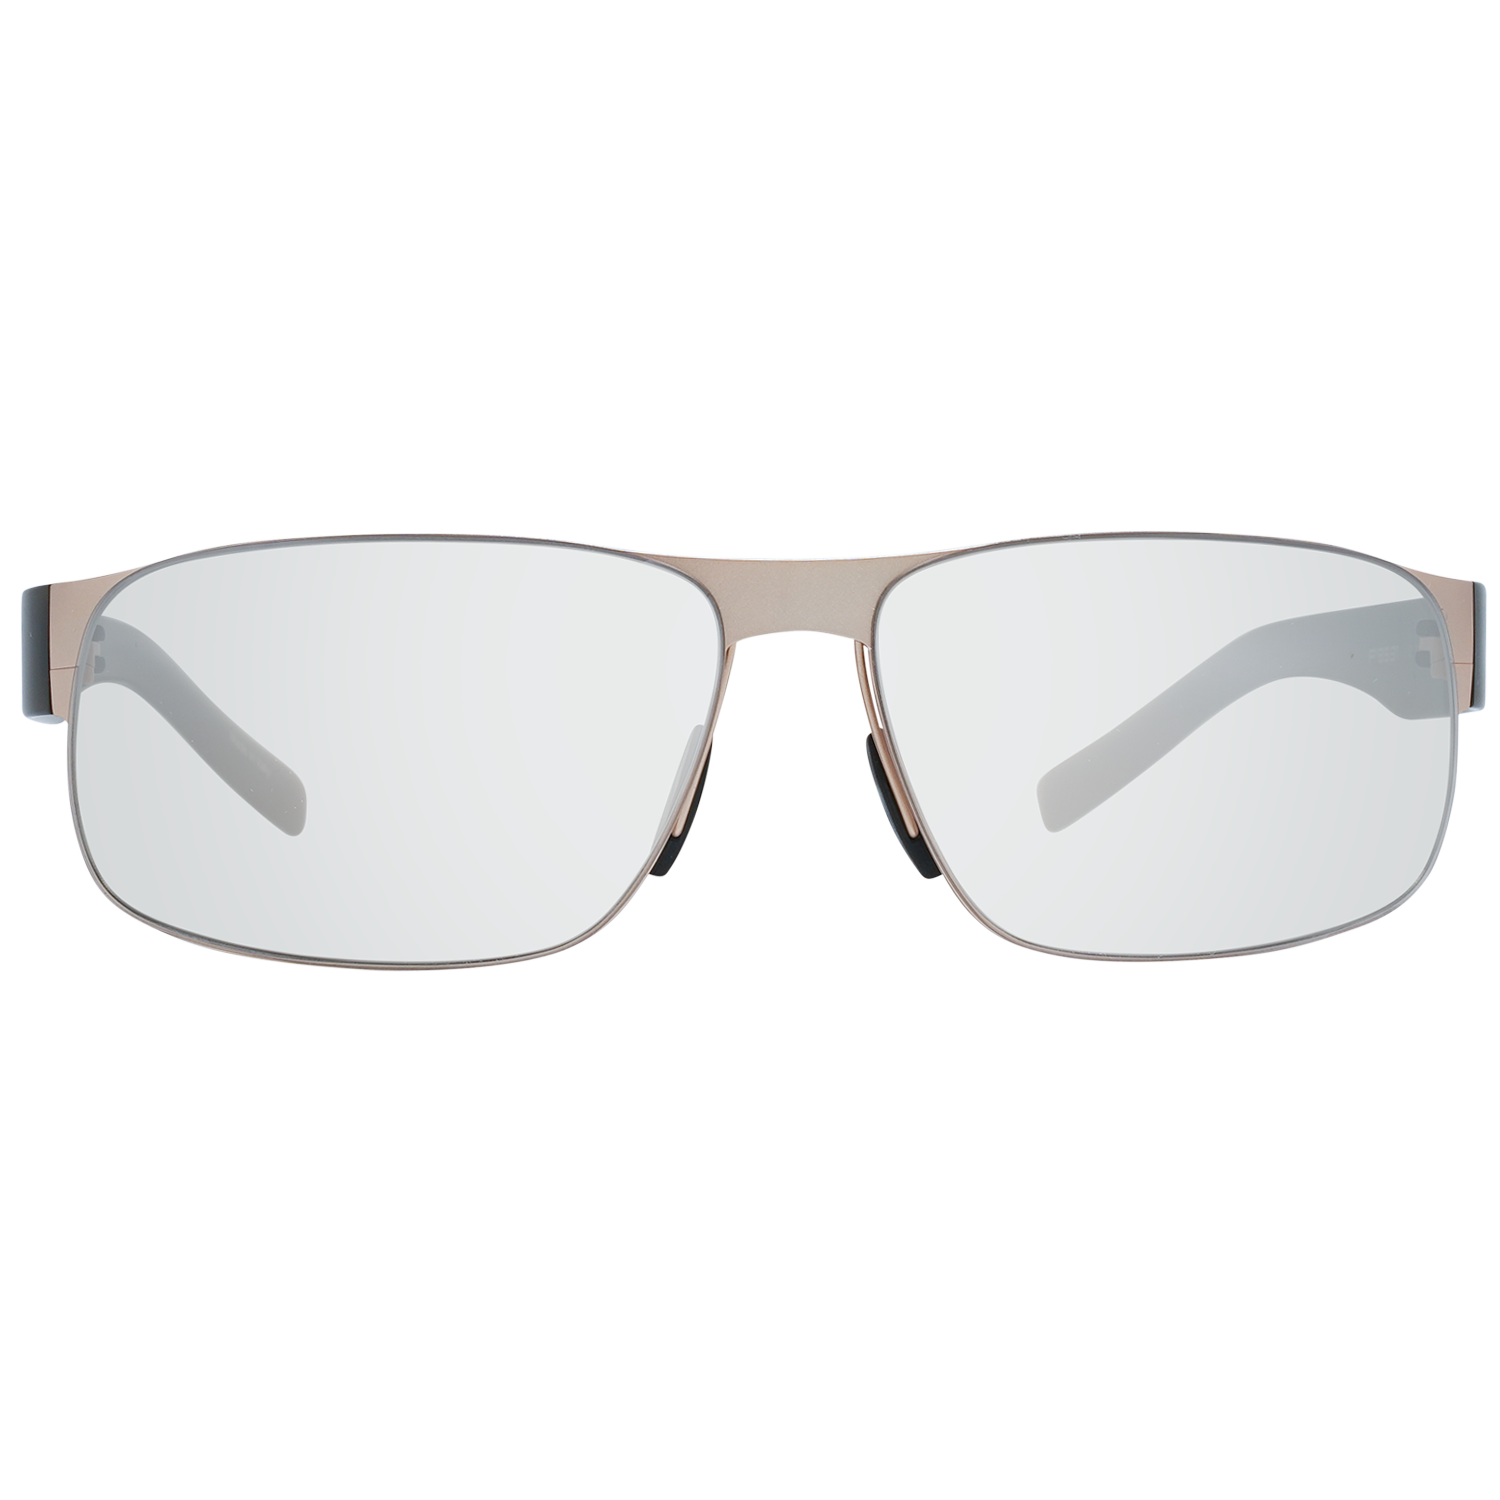 Porsche Design Sunglasses Porsche Design Sunglasses P8531 B 64 Eyeglasses Eyewear UK USA Australia 